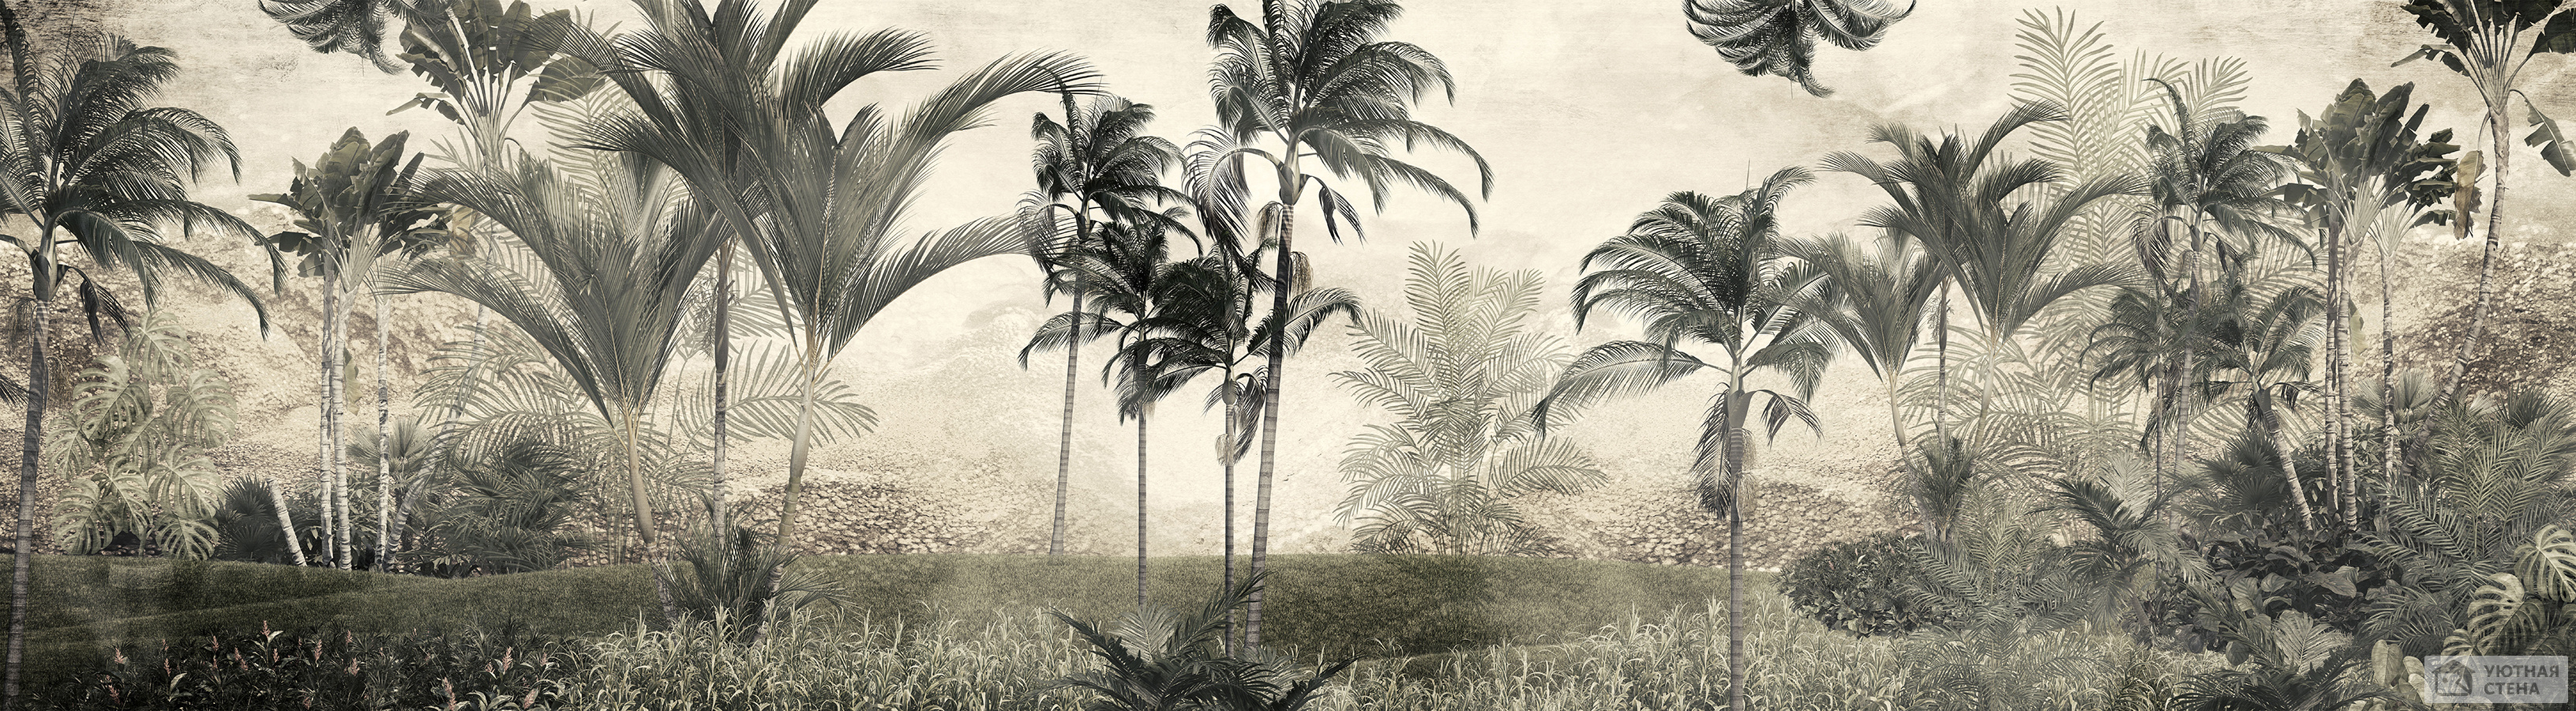 Панорама с пушистыми пальмами